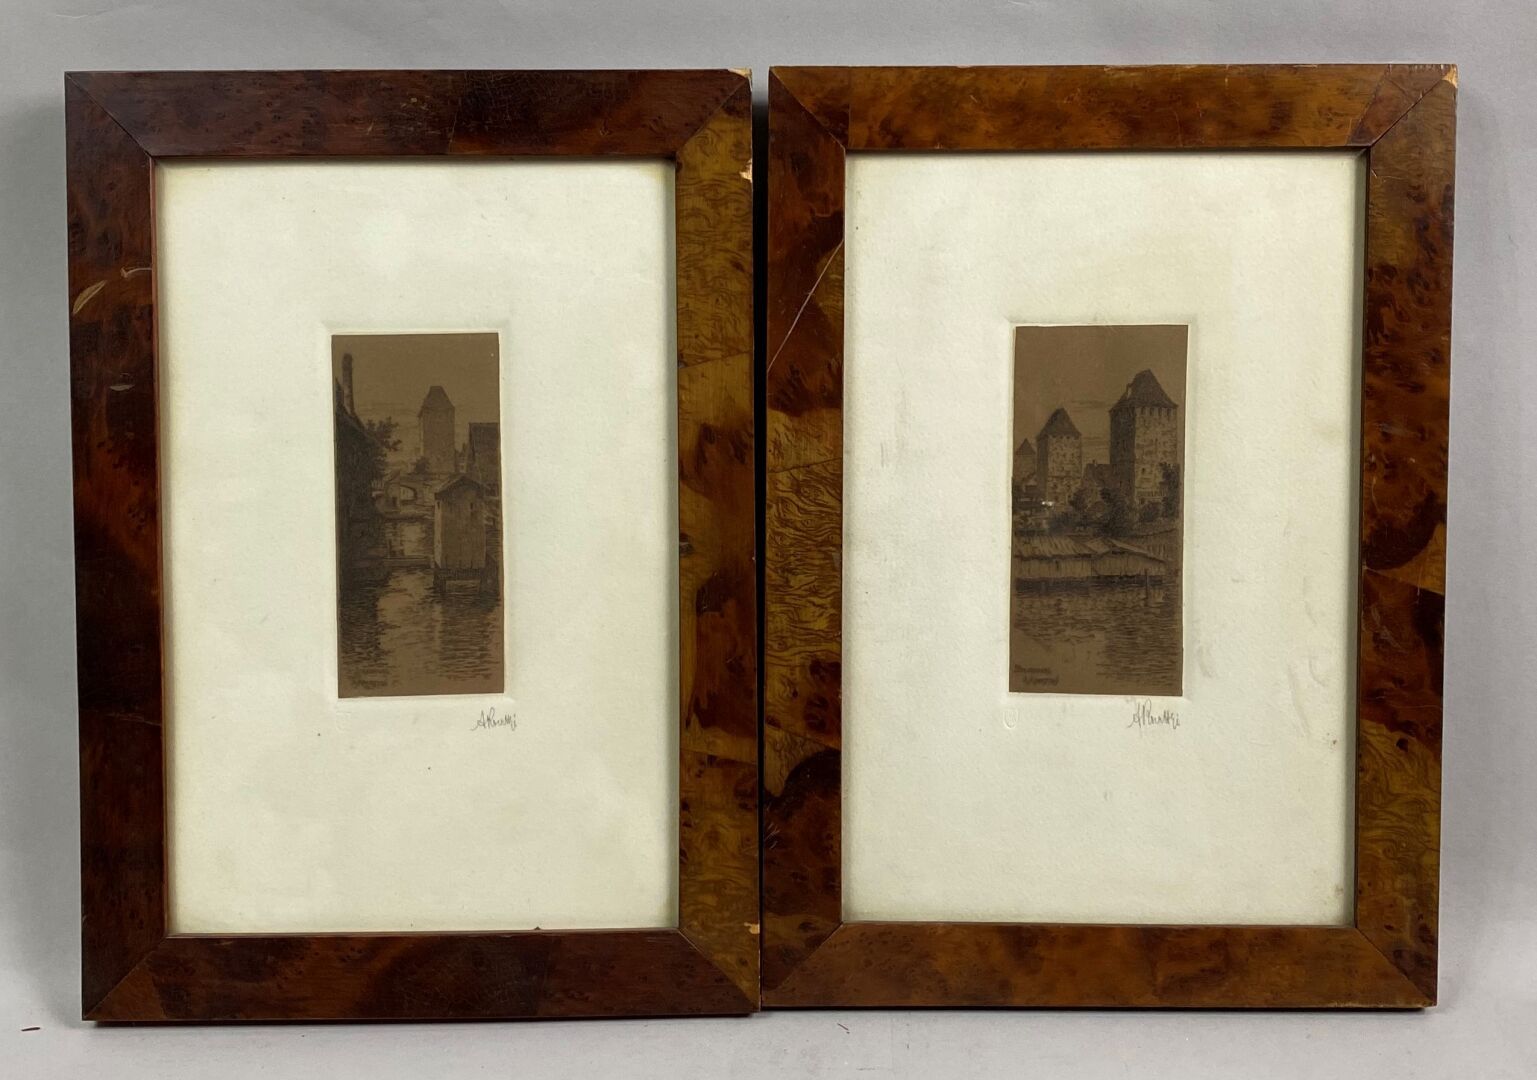 Null KOERTTGE Albert (1861-1940)

Estrasburgo

Dos pequeños grabados sobre papel&hellip;